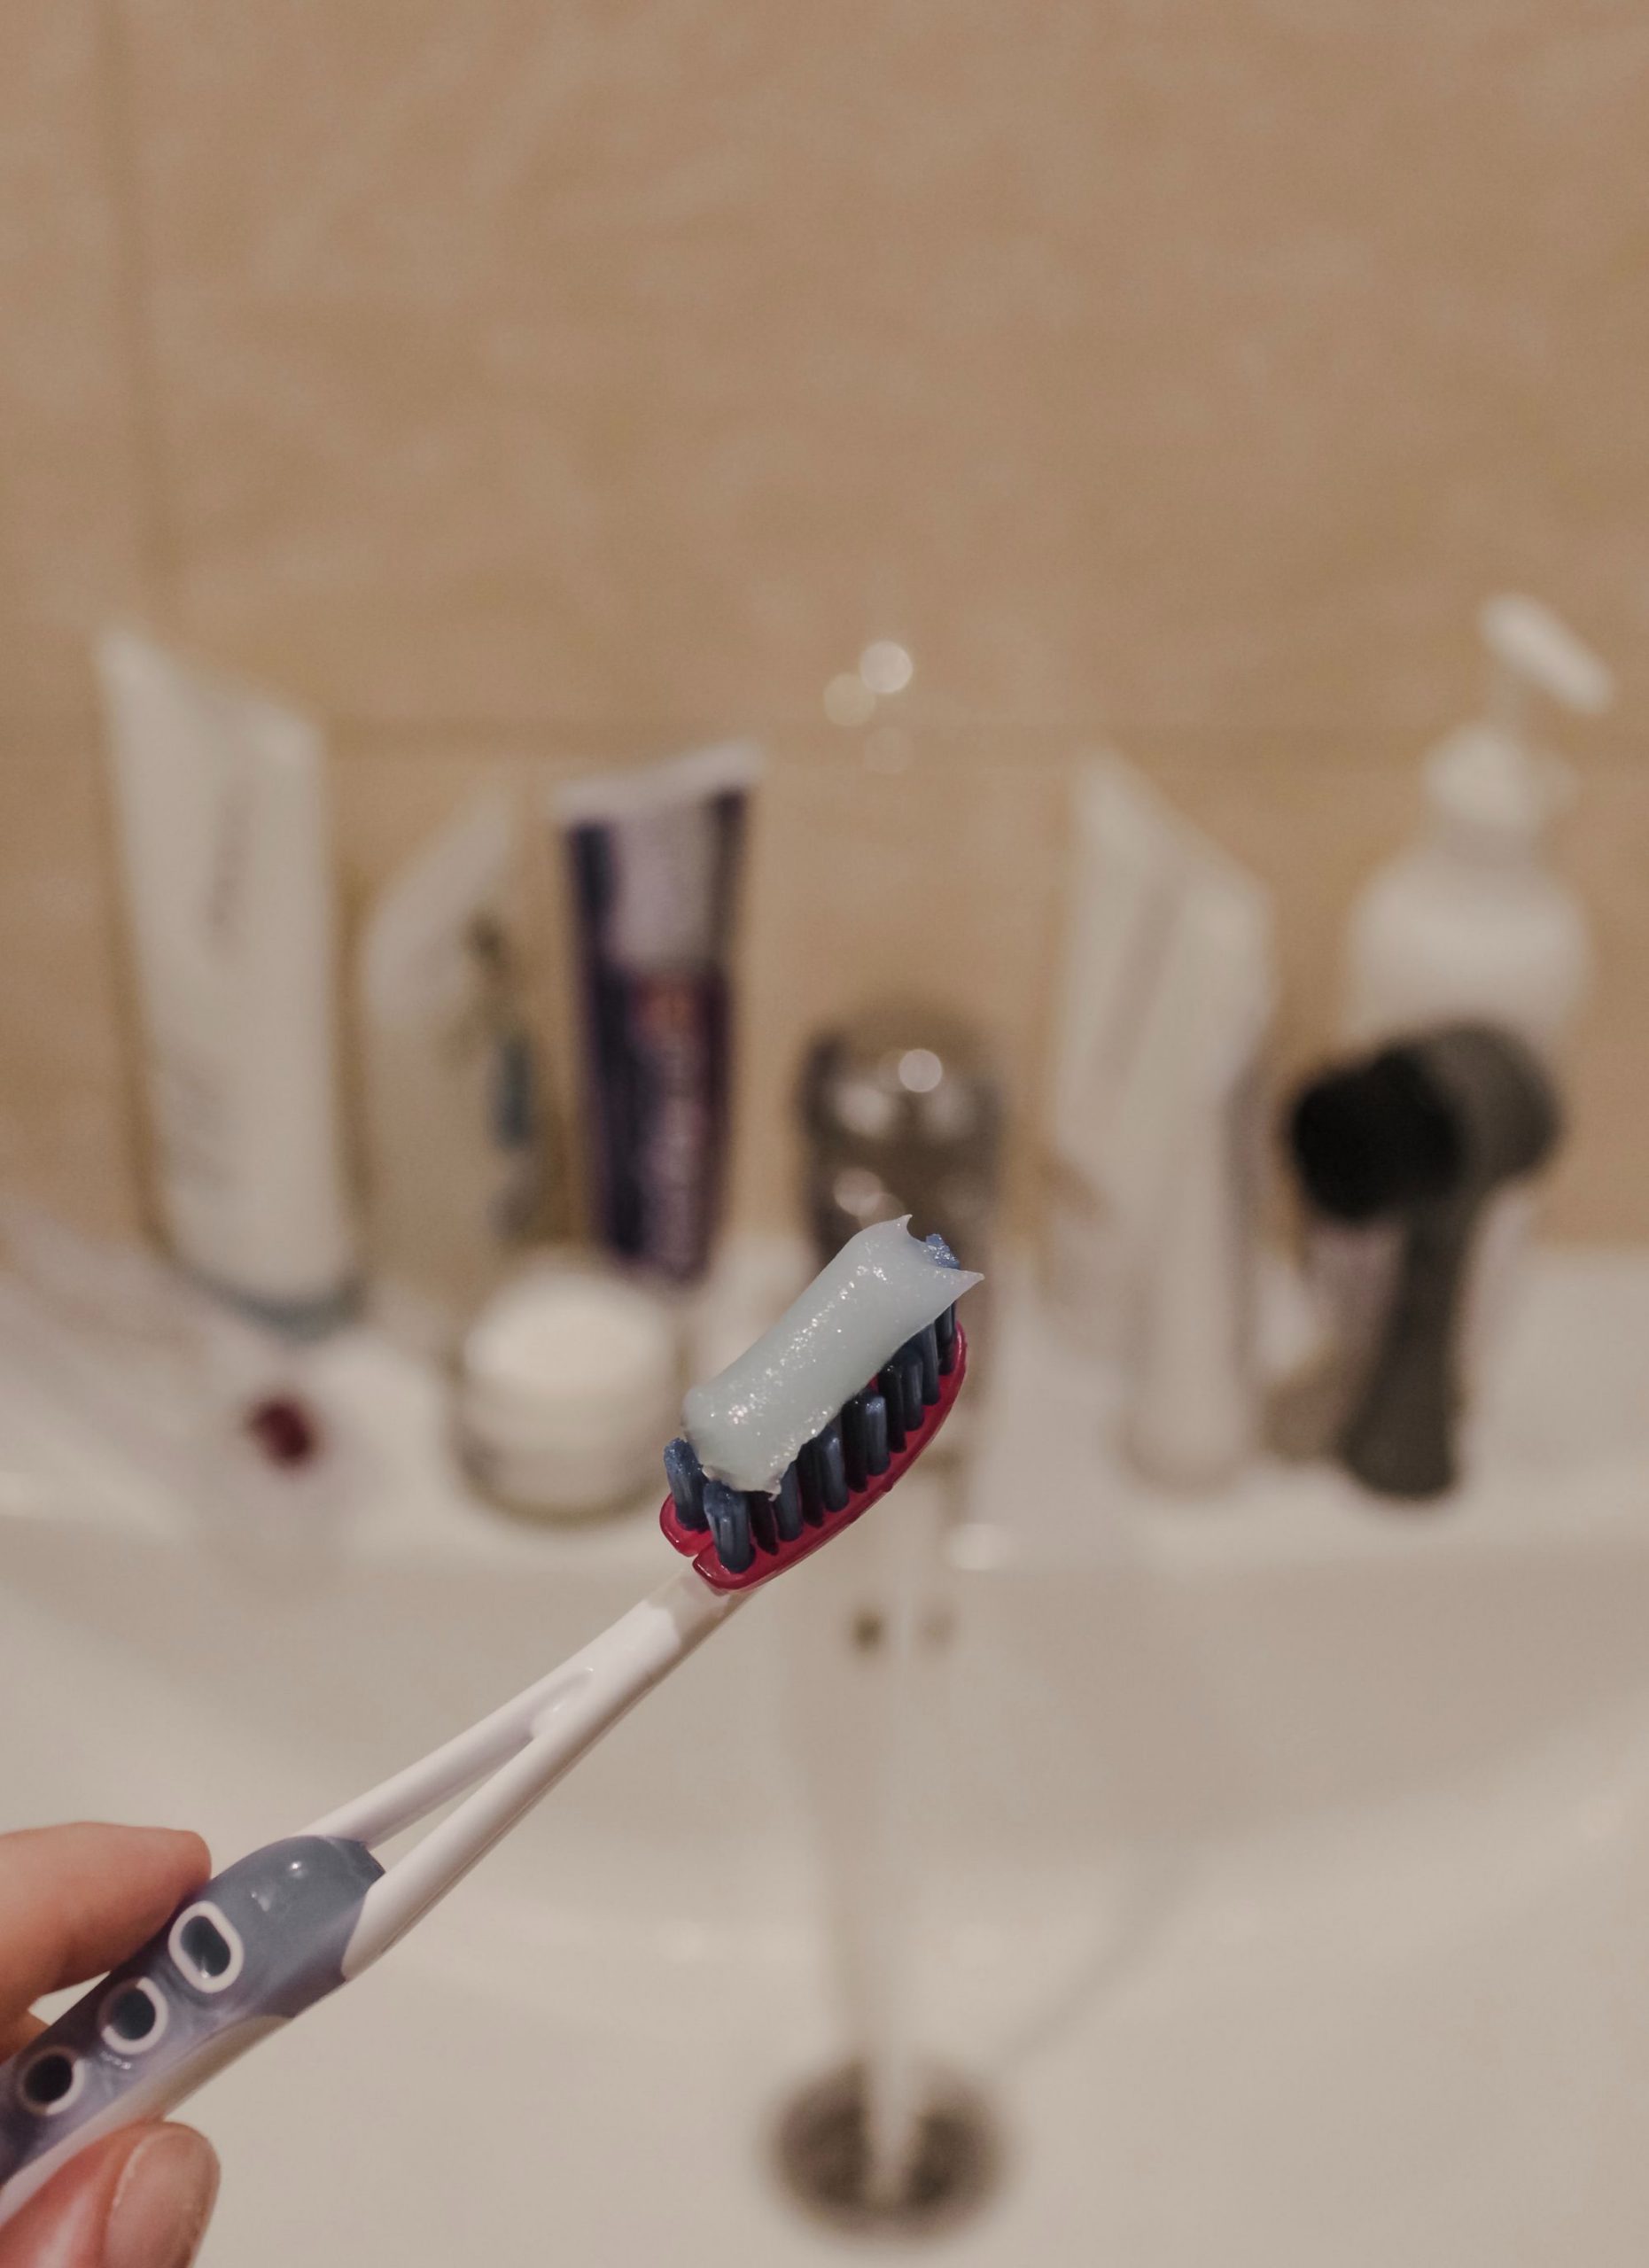 5 Công dụng của kem đánh răng khiến bạn “hoảng hồn”